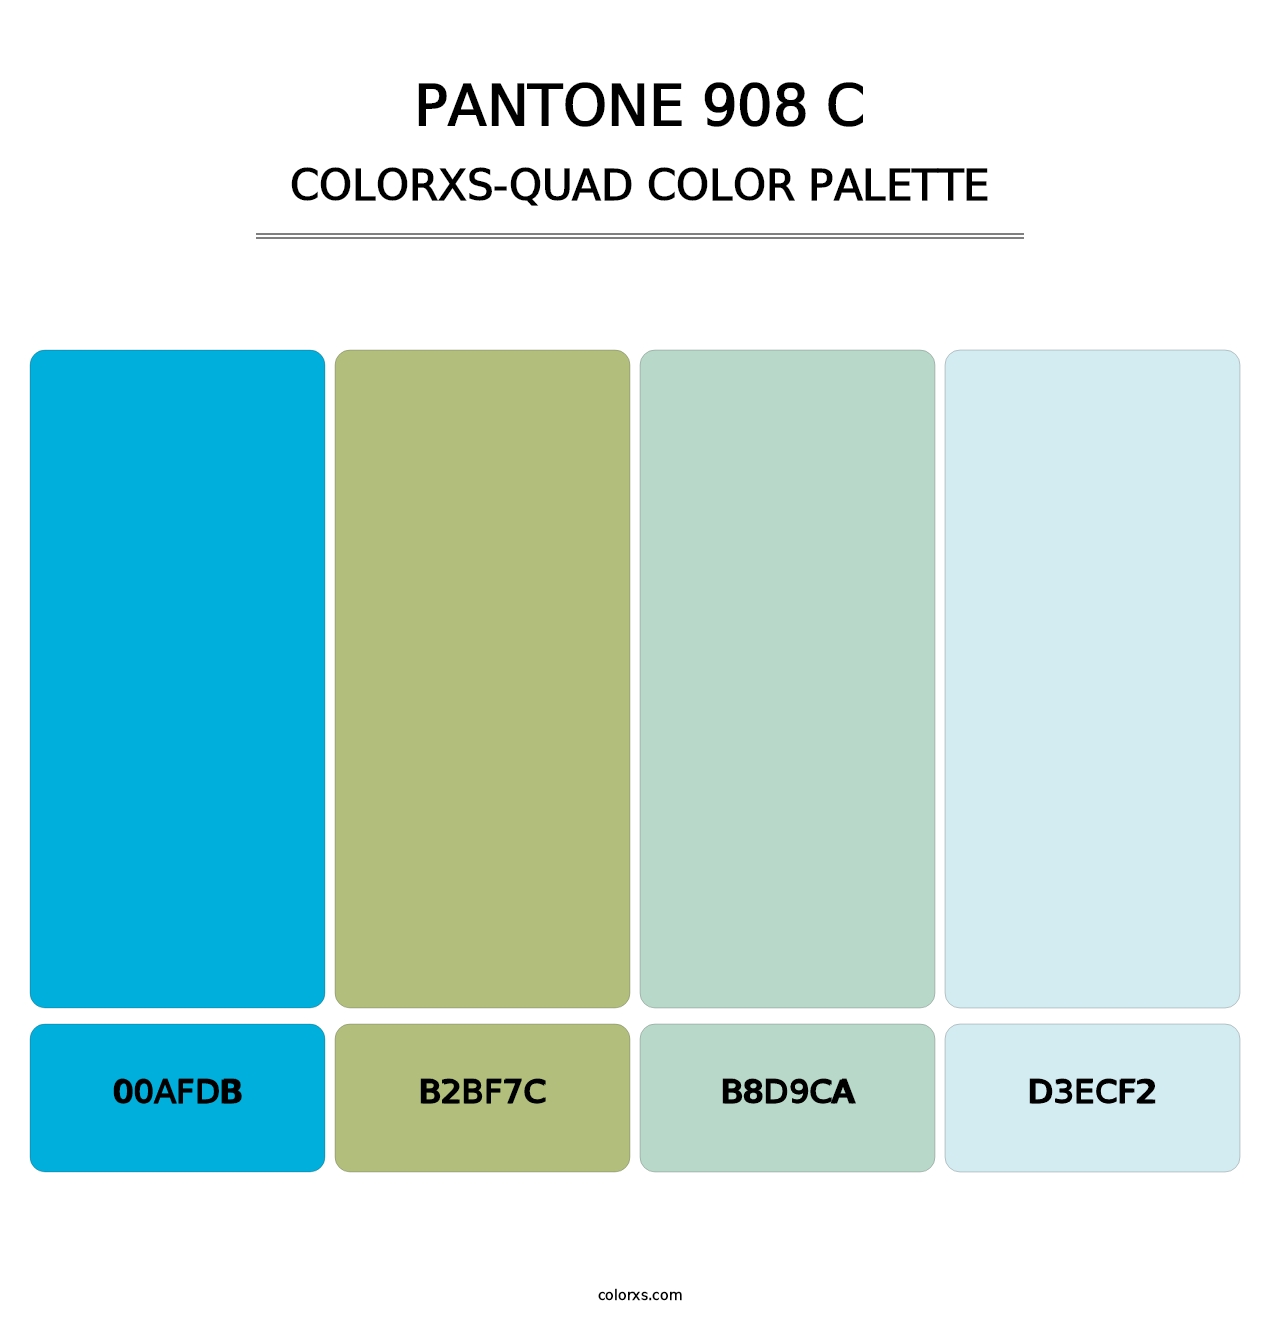 PANTONE 908 C - Colorxs Quad Palette